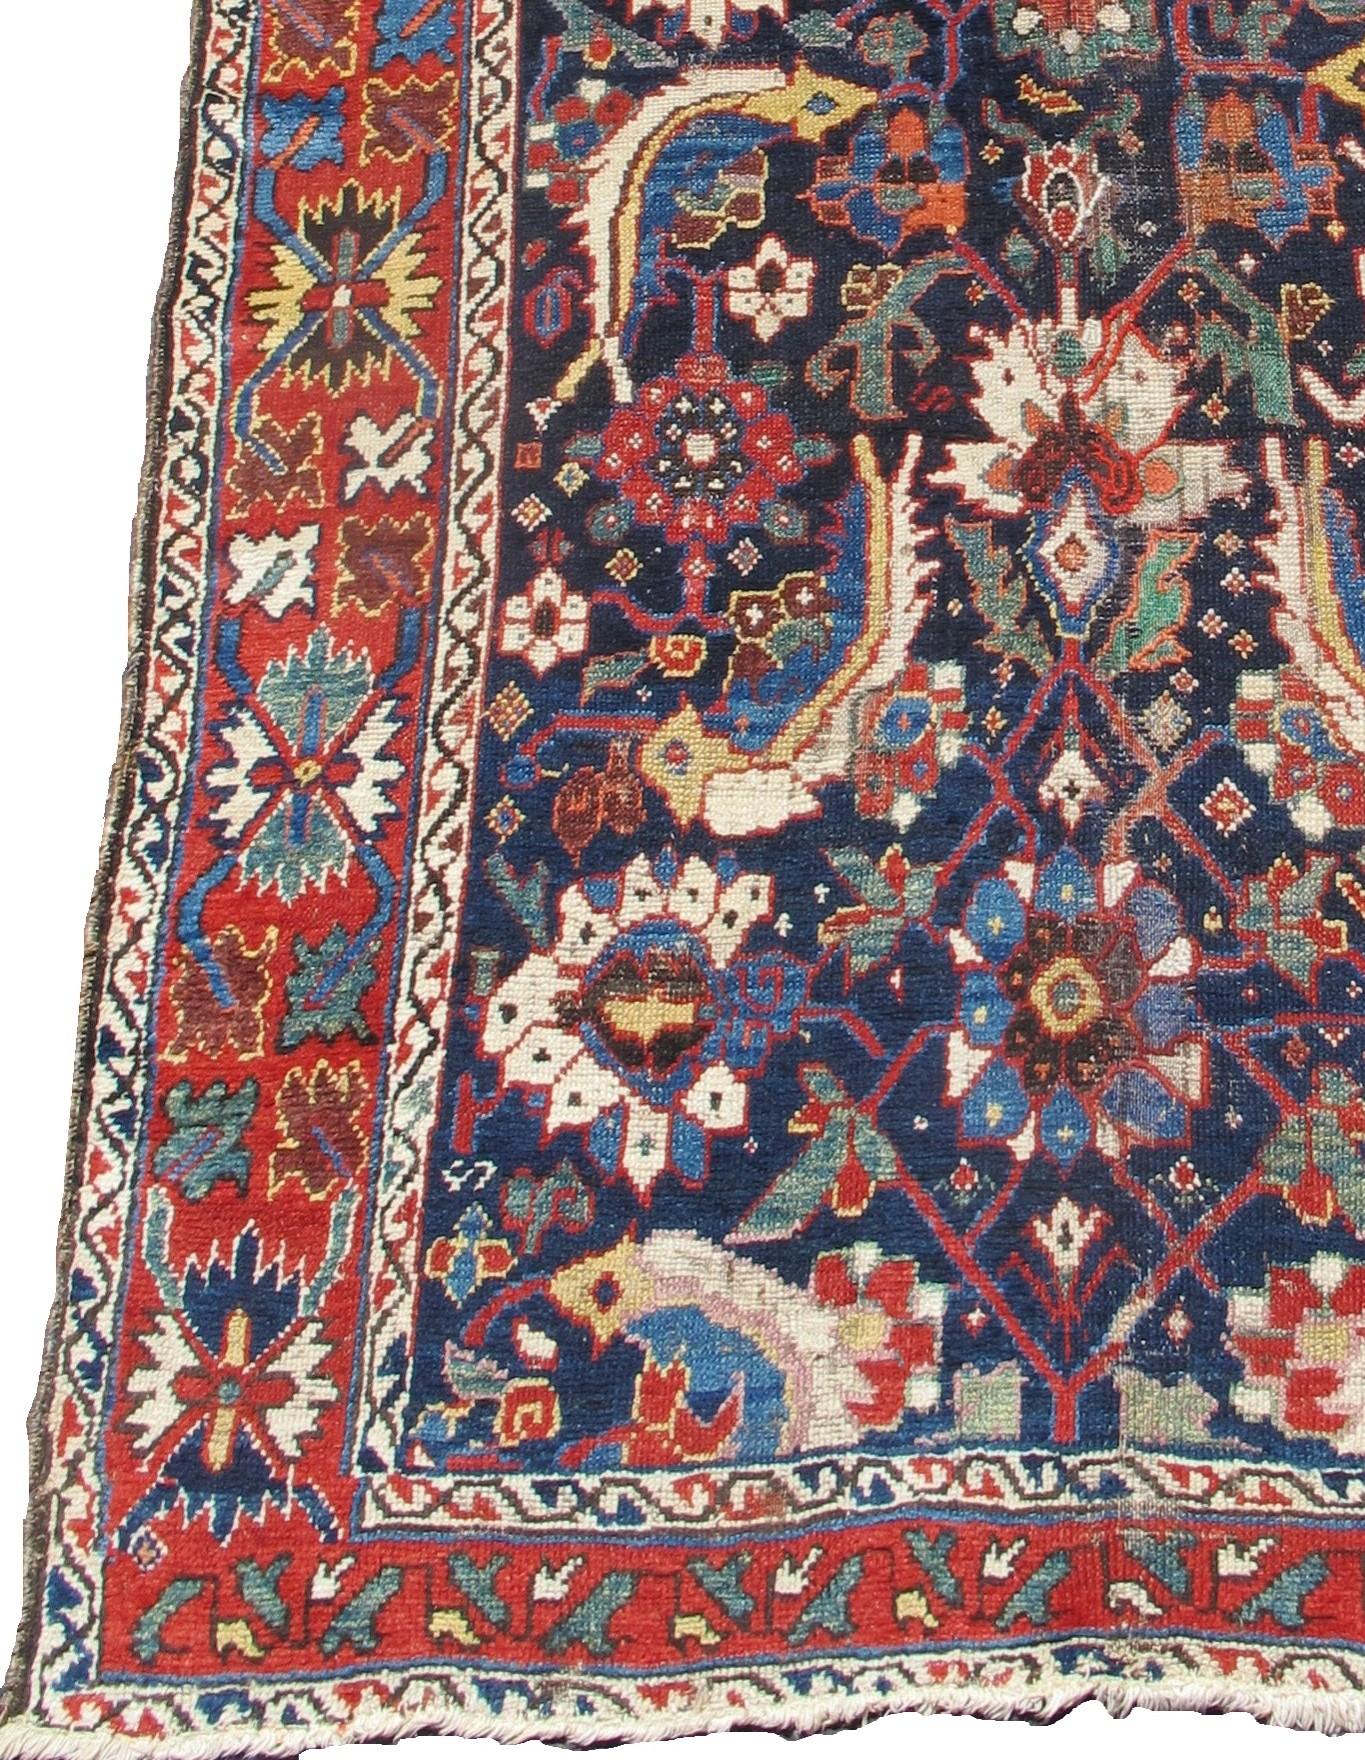 Persian Luri gallery carpet. Measures: 5'5